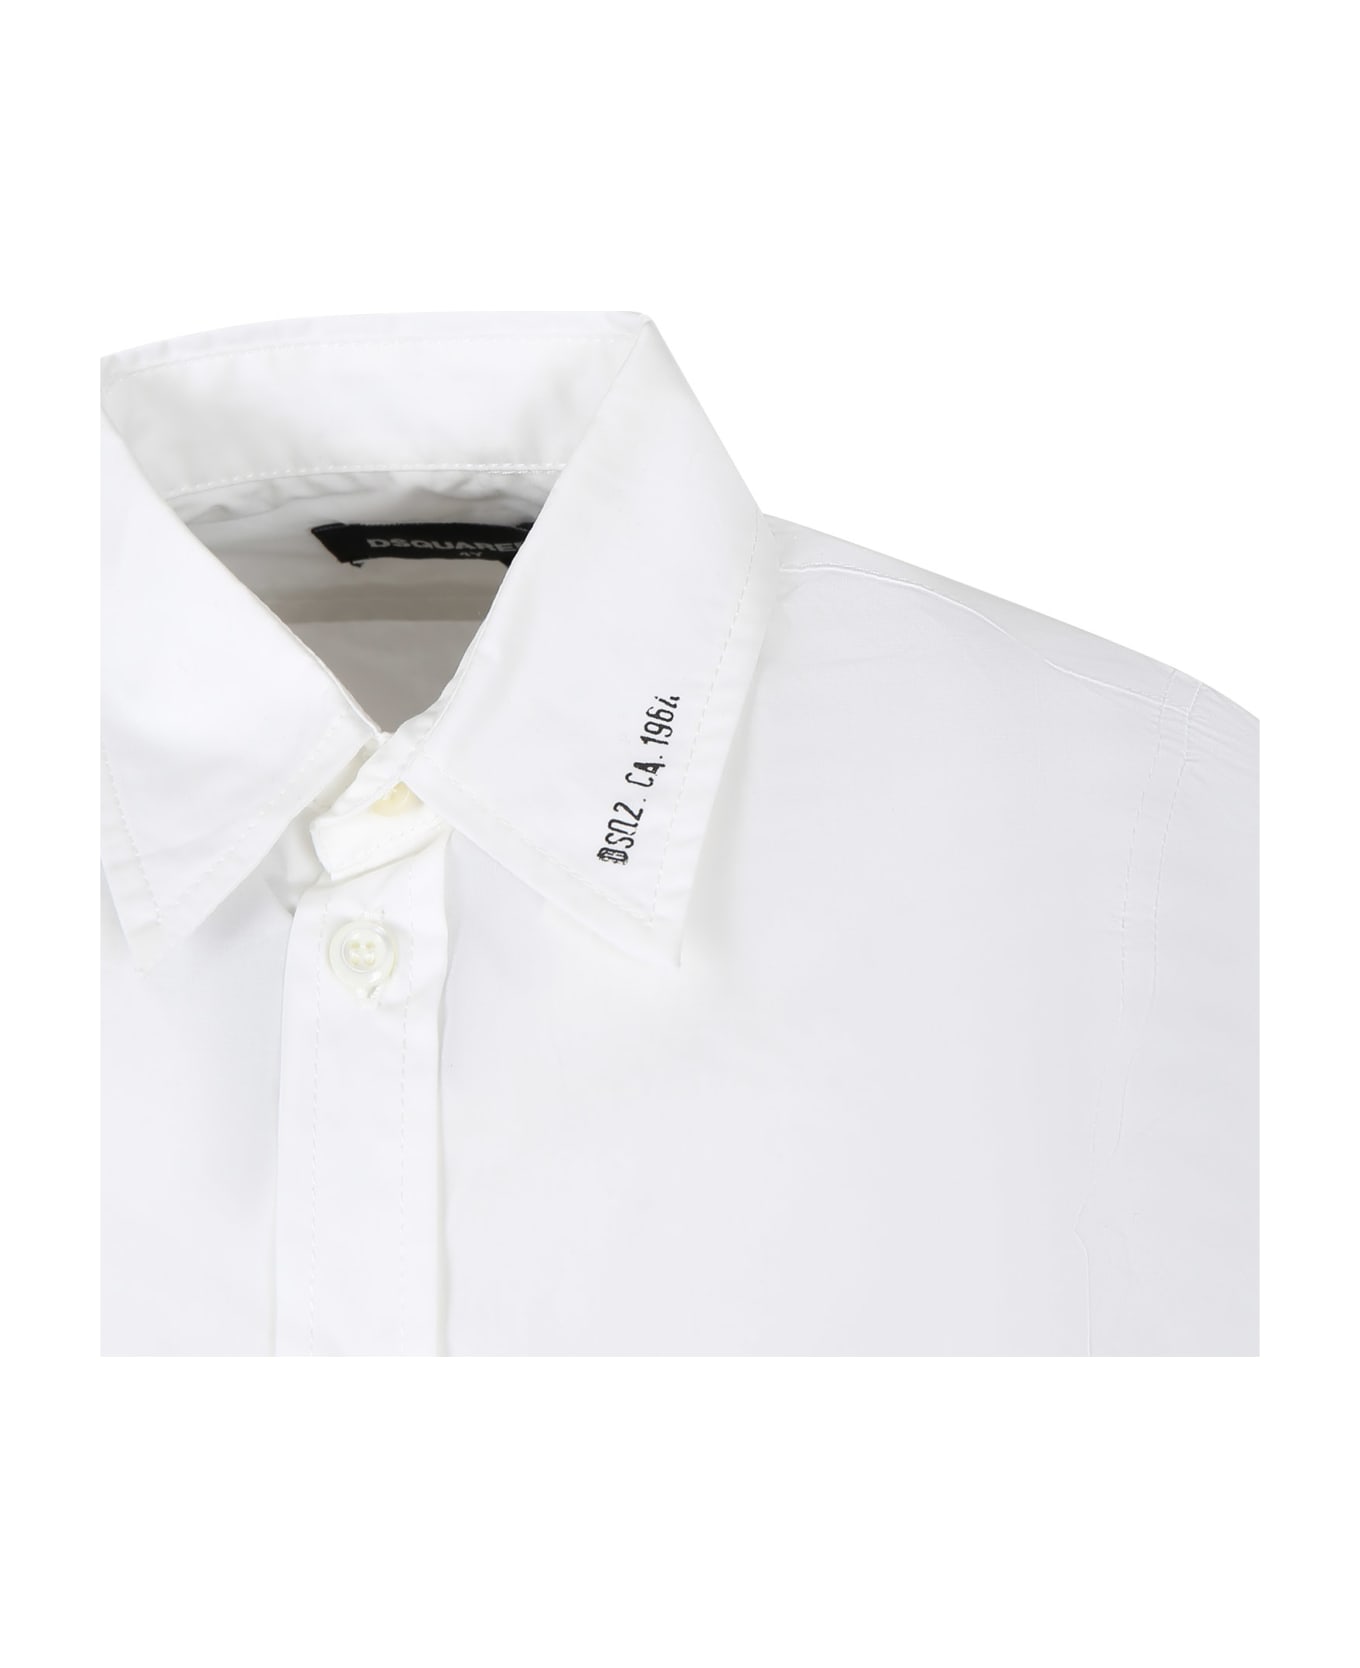 Dsquared2 White Shirt For Boy - White シャツ